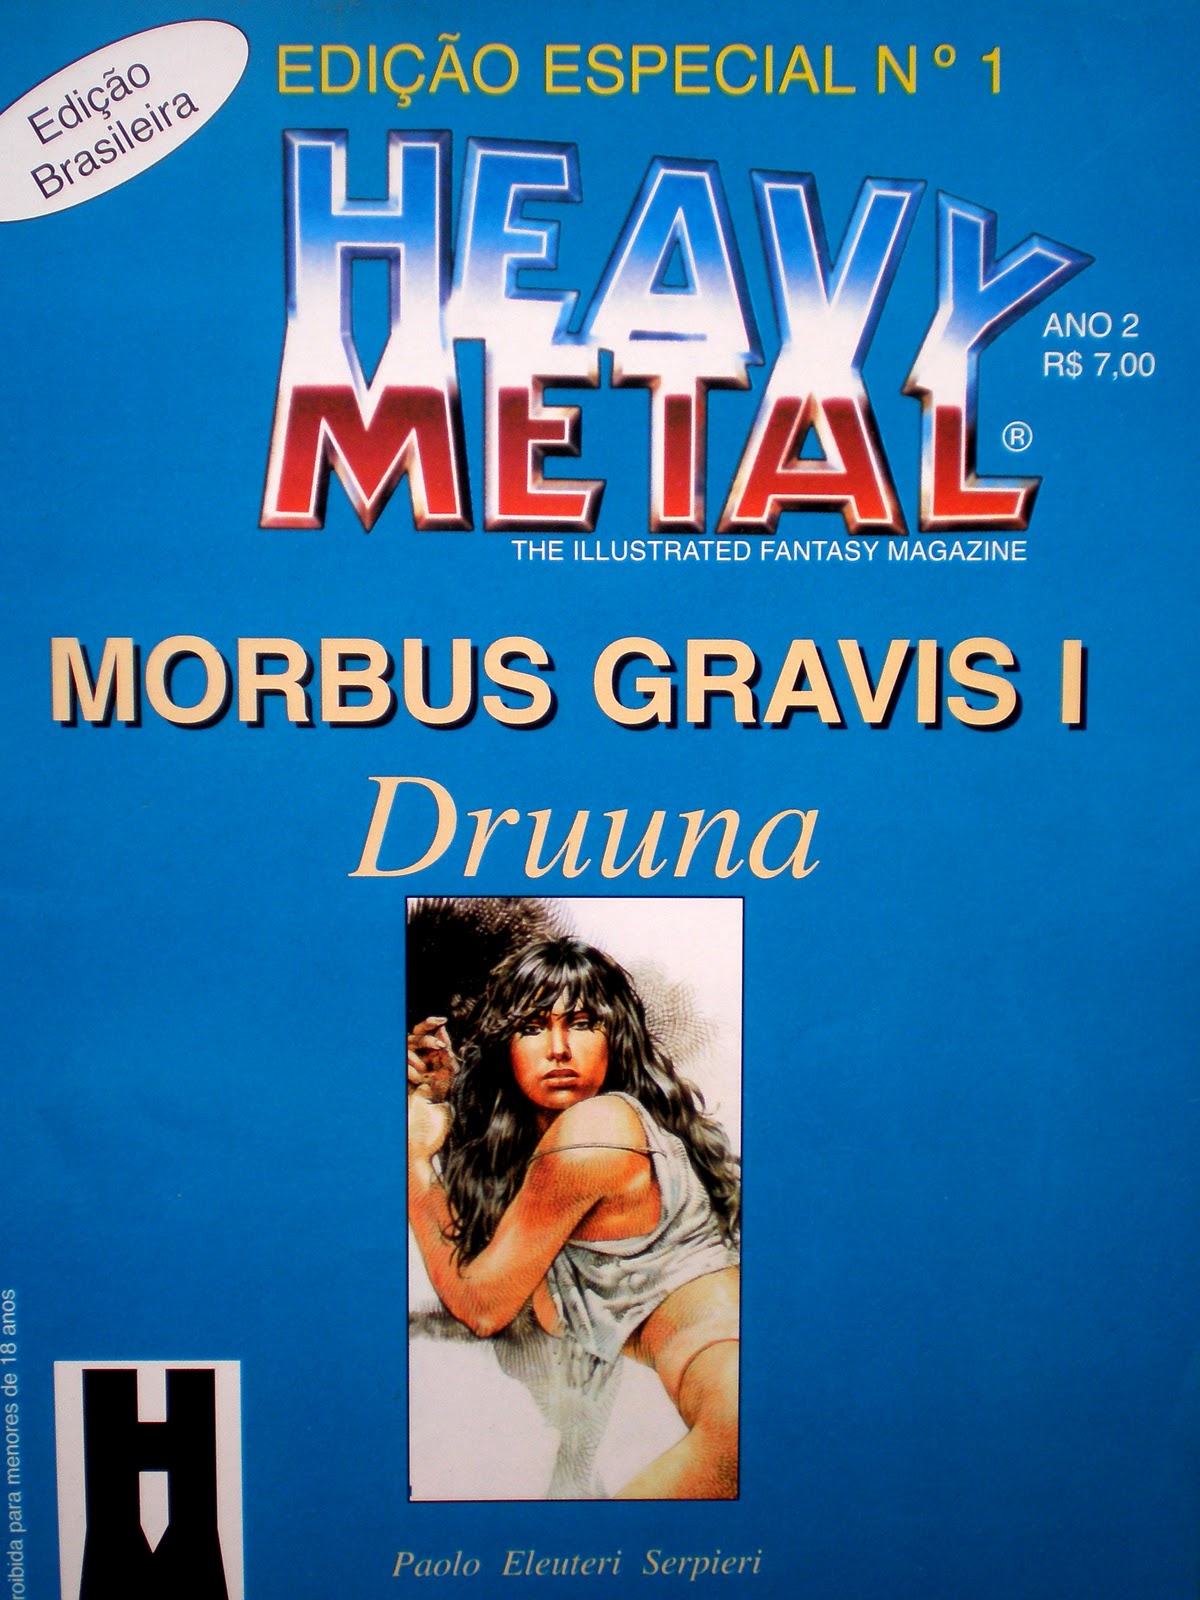 [DRUUNA 1 MORBUS GRAVIS - HEAVY METAL.jpg]